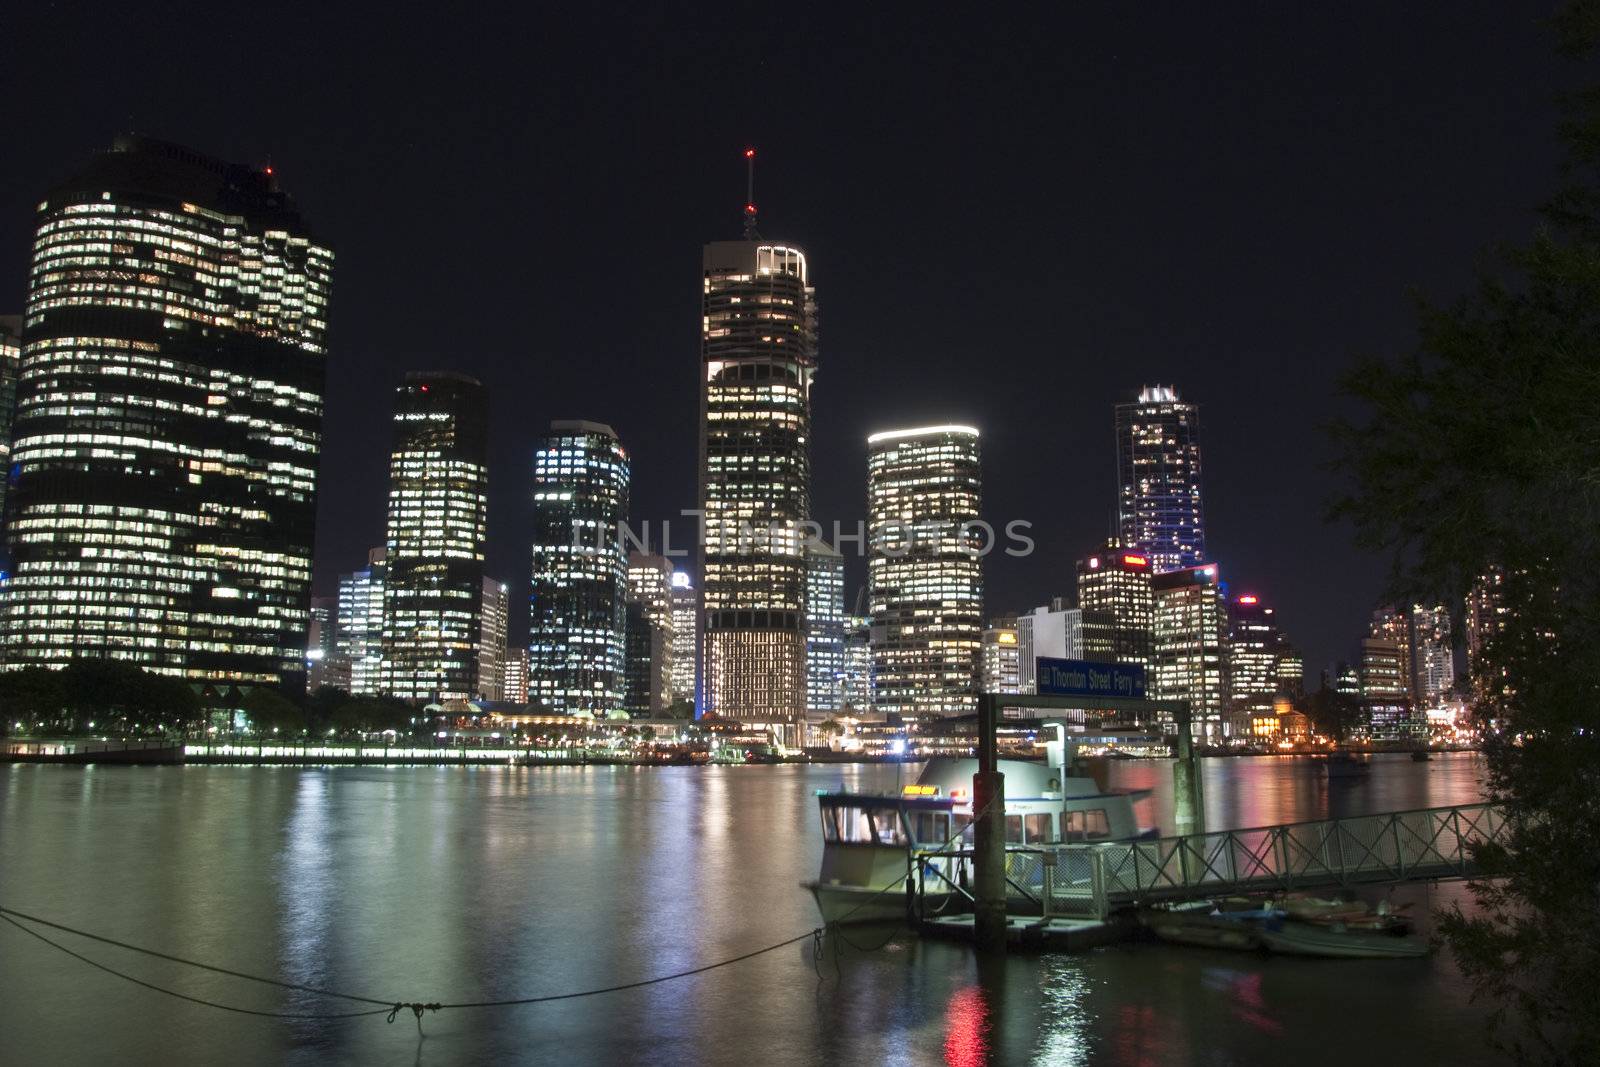 Brisbane River by Night, Australia, August 2009 by jovannig